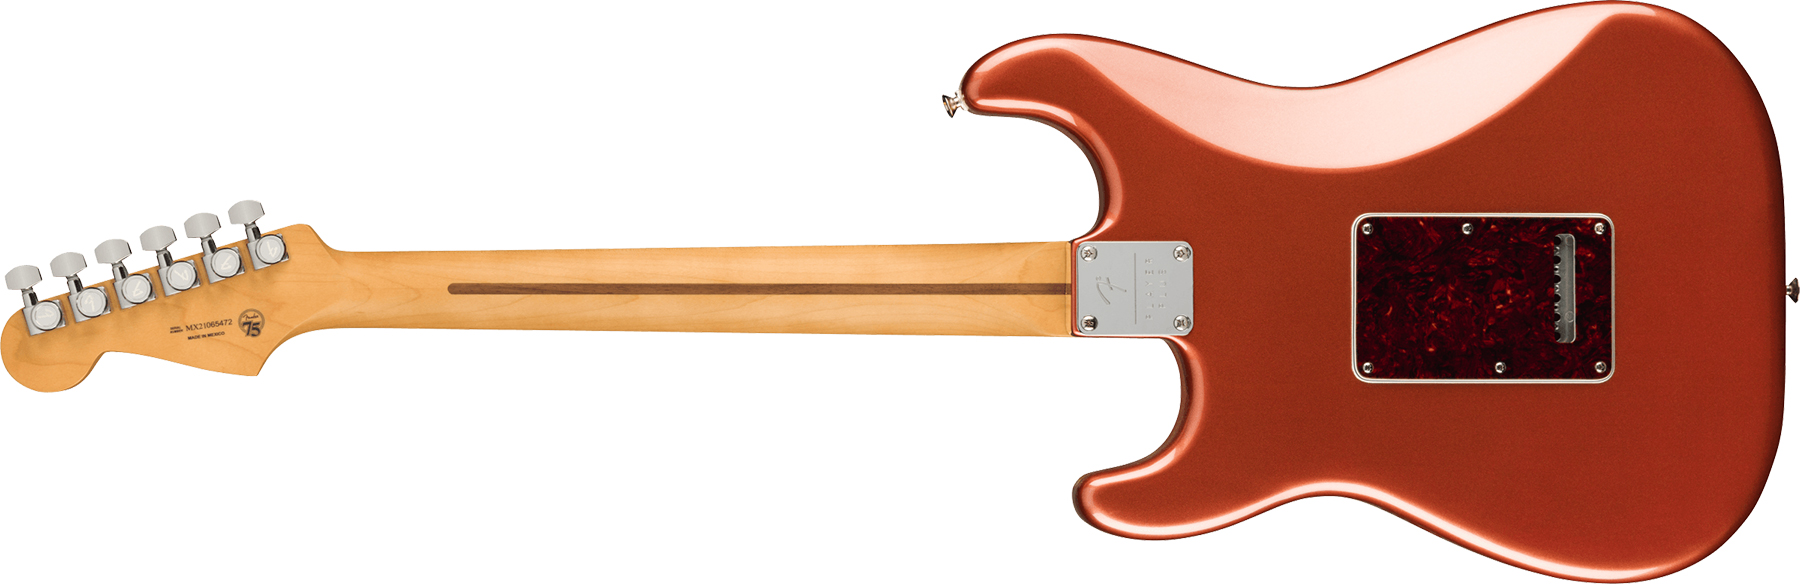 Fender Strat Player Plus Mex 3s Trem Pf - Aged Candy Apple Red - Elektrische gitaar in Str-vorm - Variation 1